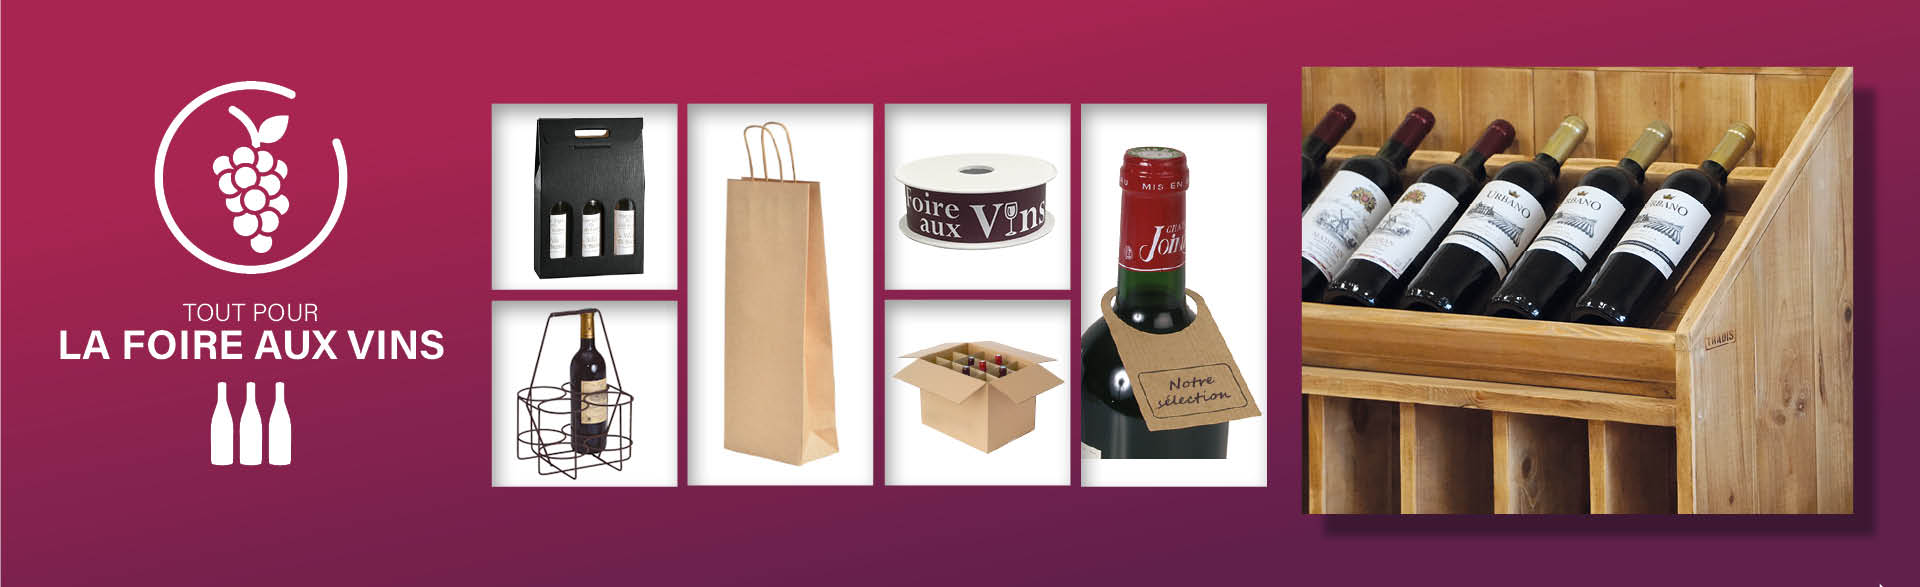 Préparez la Foire Aux Vins ! Mobilier - Présentoirs à bouteilles Emballage - Décors